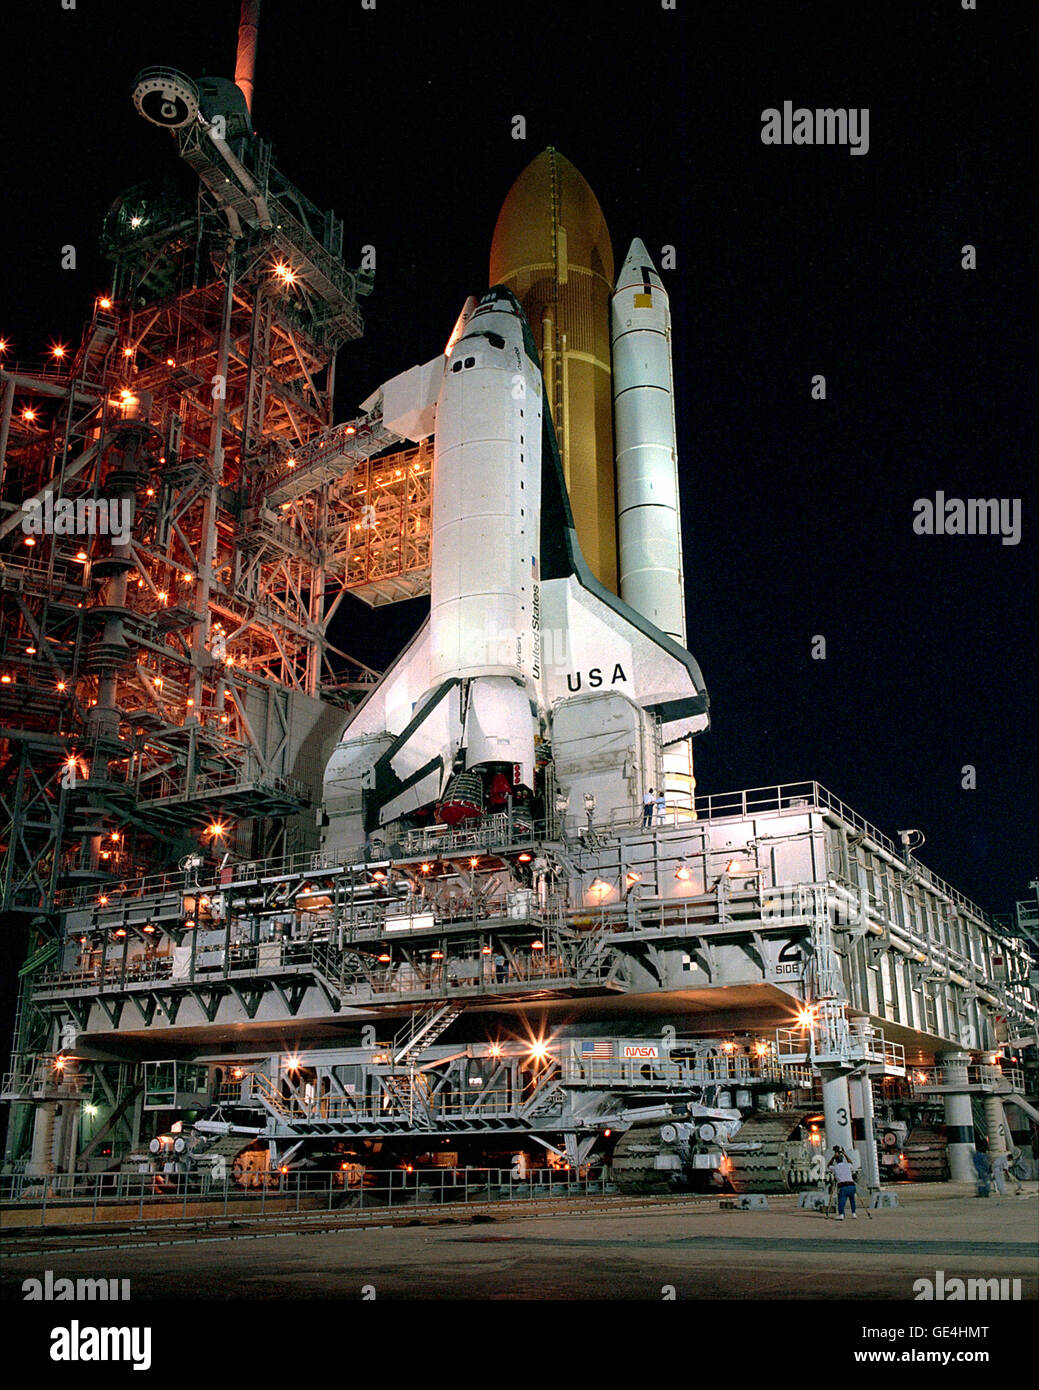 El Transbordador Espacial Columbia llega al pad 39B temprano en la mañana después de haber salido de el edificio de ensamblaje de vehículos la noche antes. Columbia está programado para lanzamiento en la misión del Transbordador Espacial STS-28 a finales de julio en una misión específica del Departamento de Defensa Foto de stock